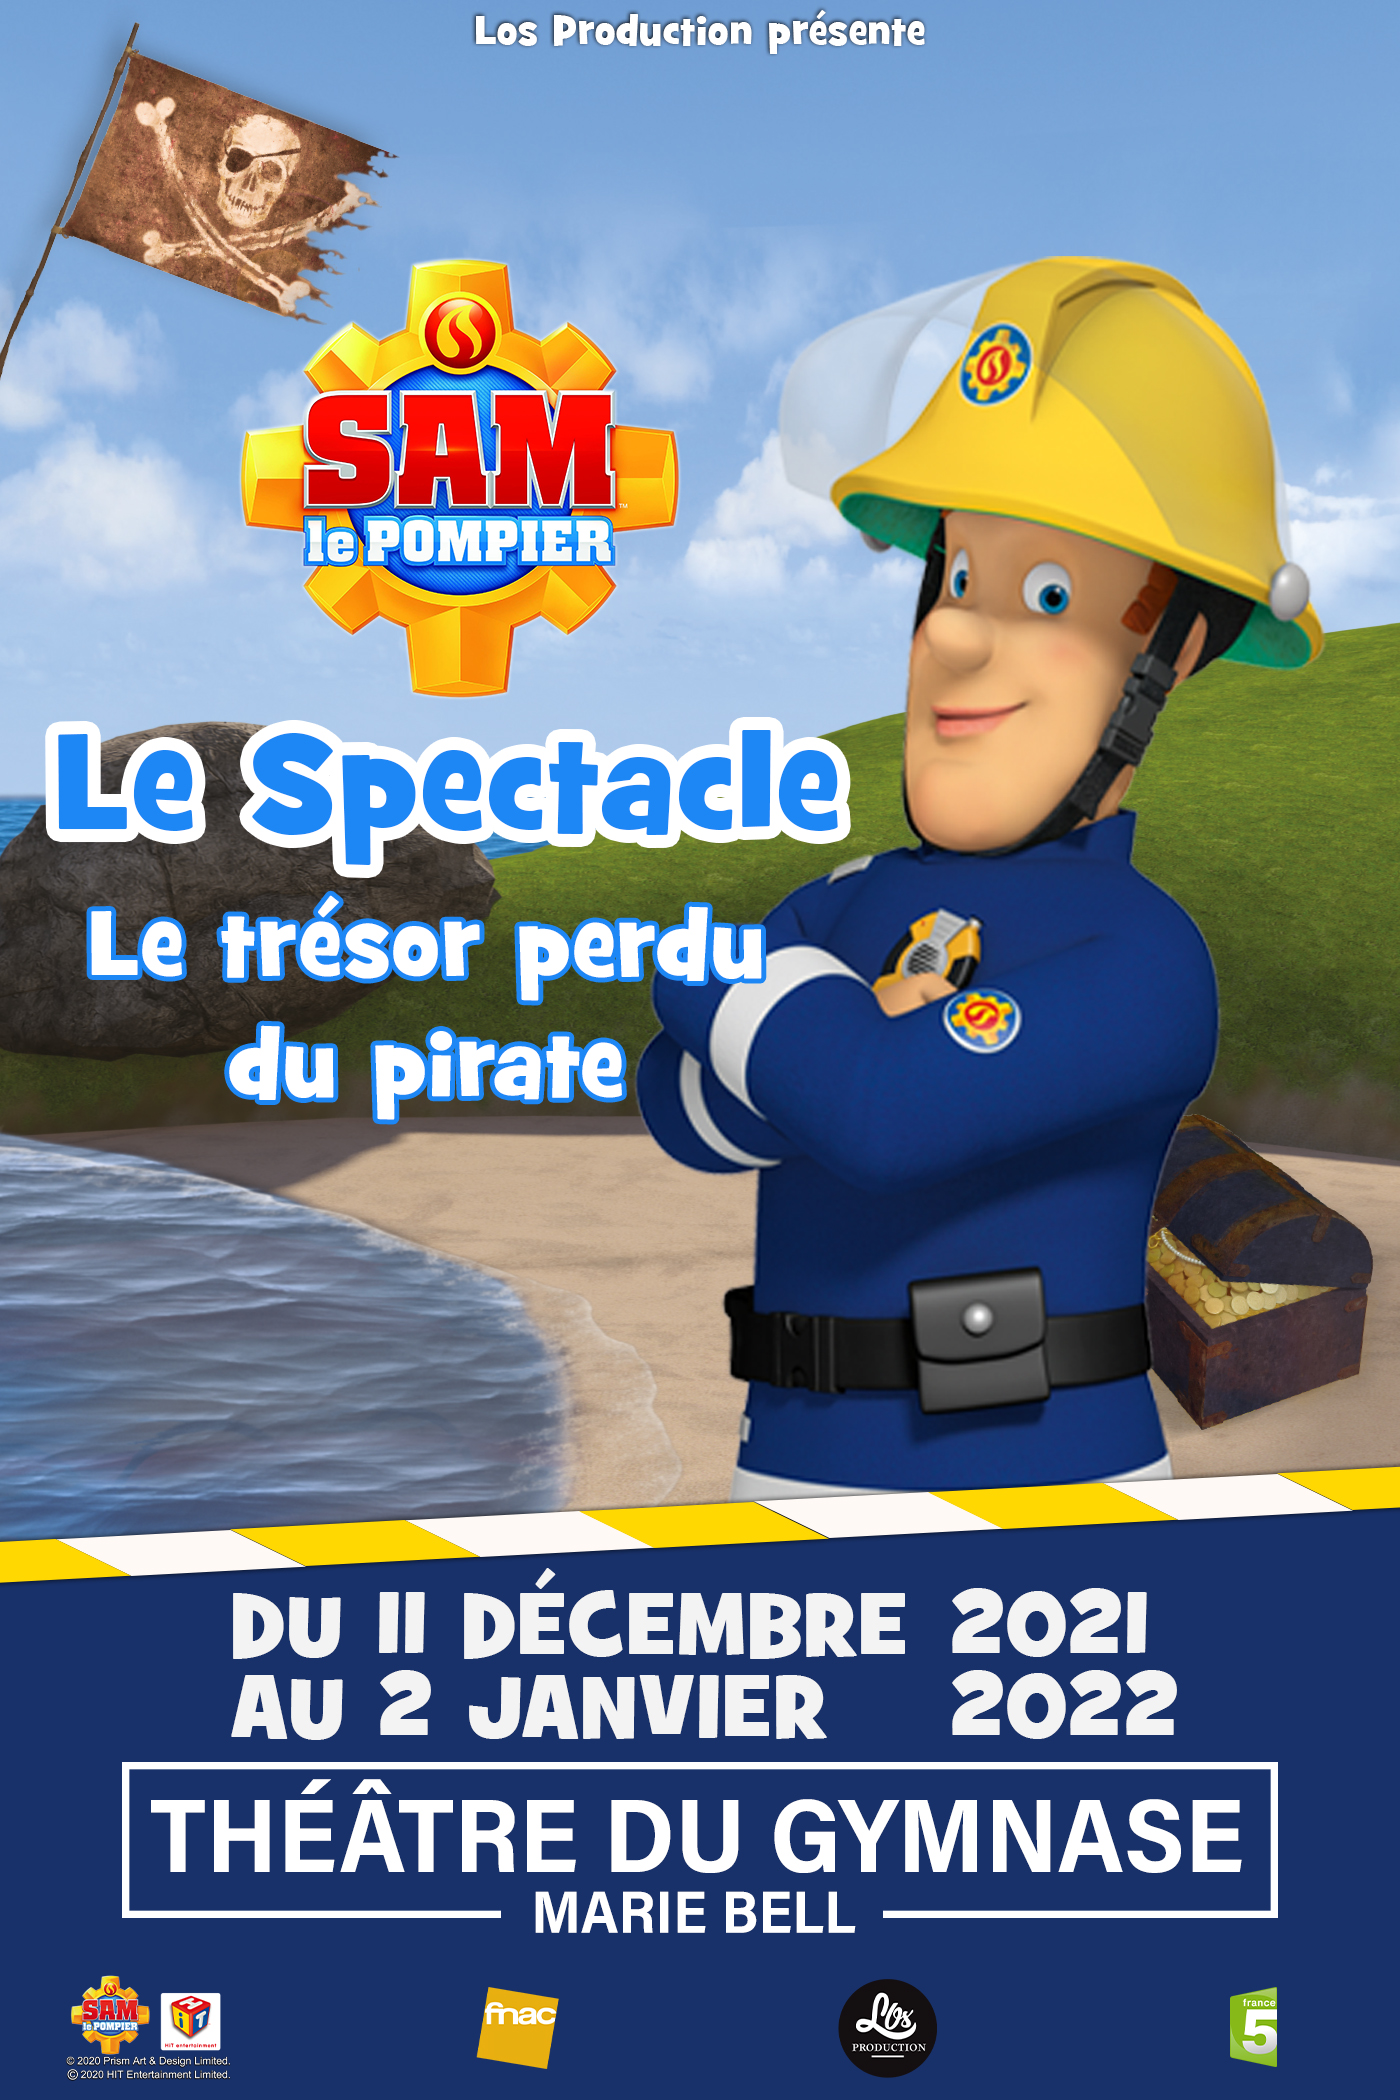 Sam Le Pompier, Theatre du Gymnase